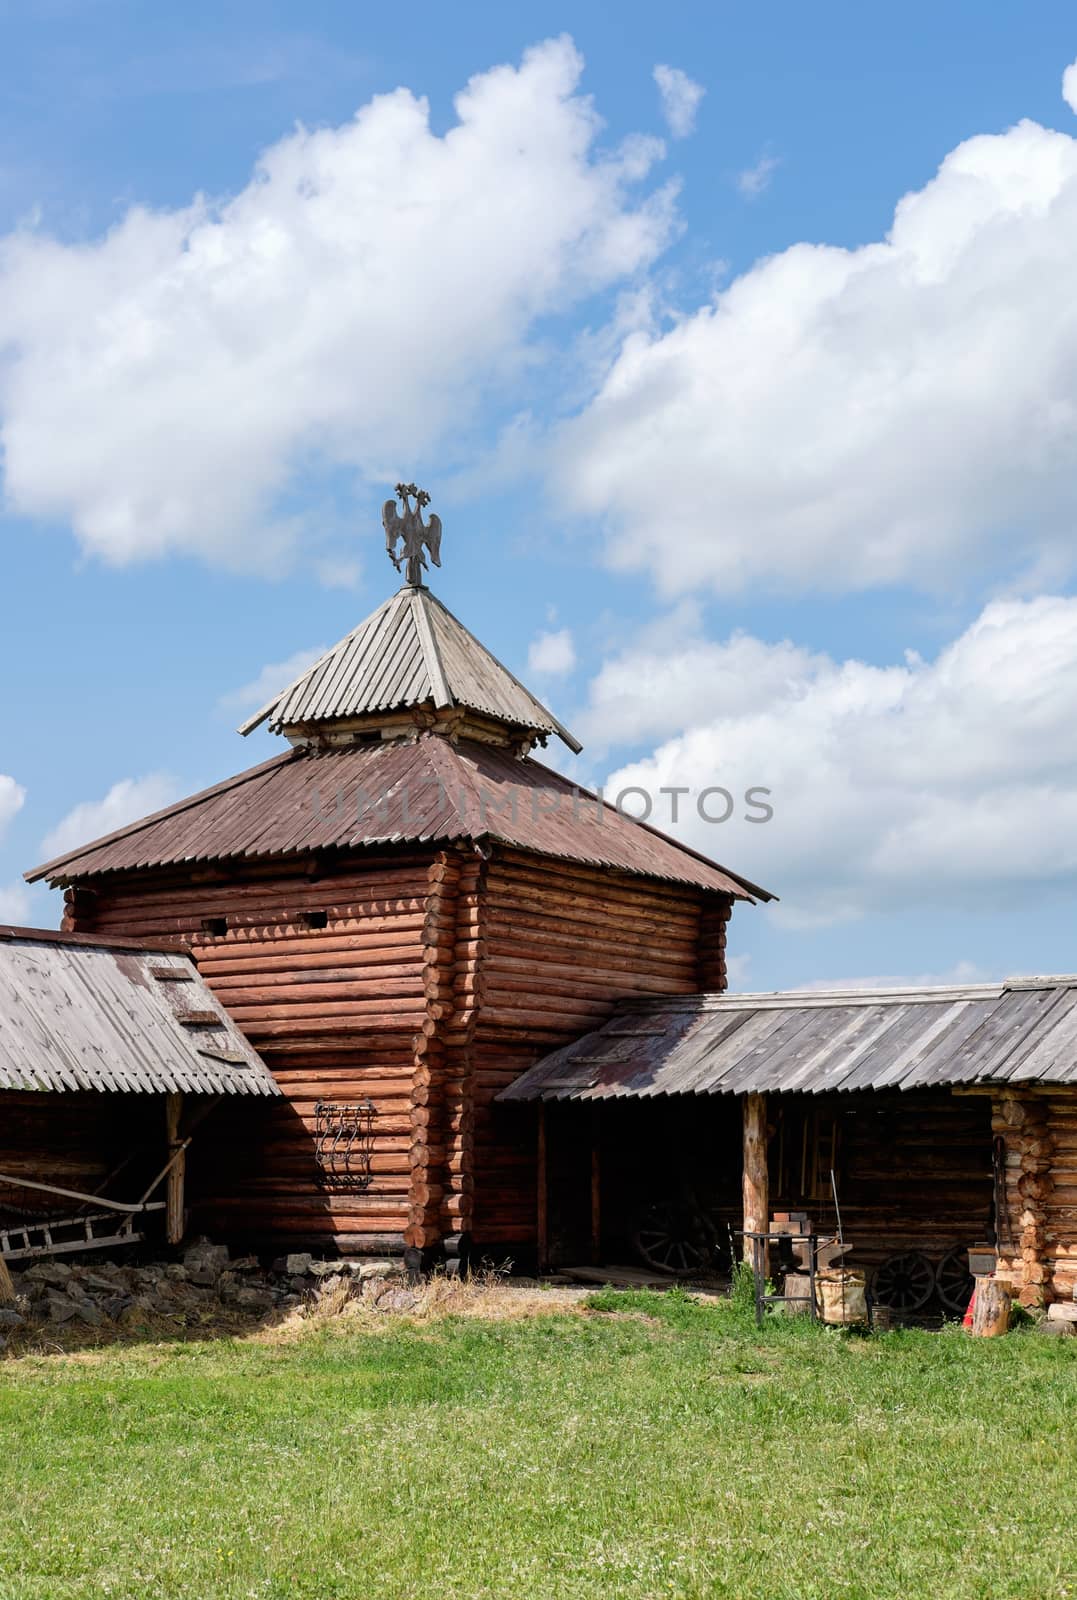 Semiluzhenski kazak ostrog - small wooden fort in Siberia by rainfallsup